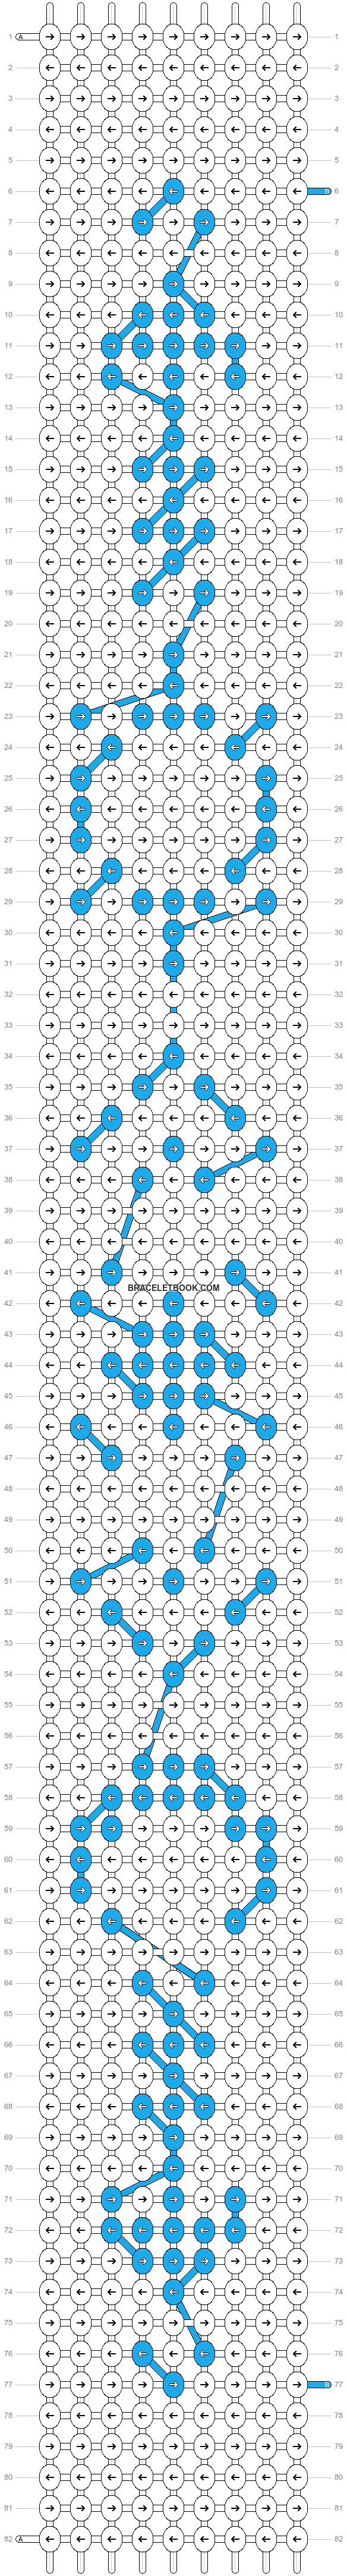 Alpha pattern #77975 | BraceletBook